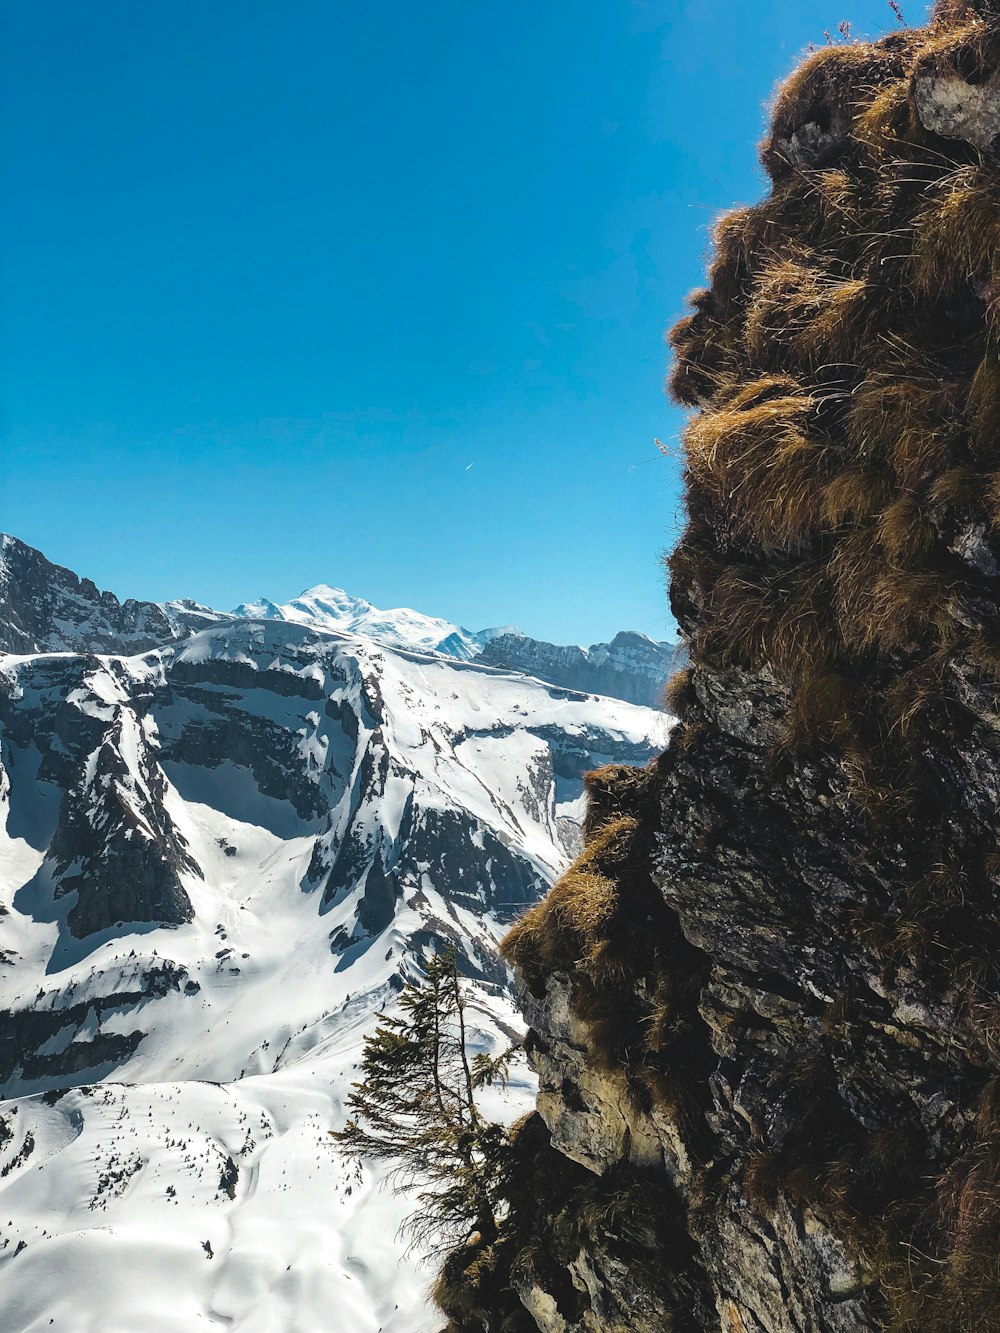 Blick auf eine verschneite Bergkette von einem hohen Aussichtspunkt aus